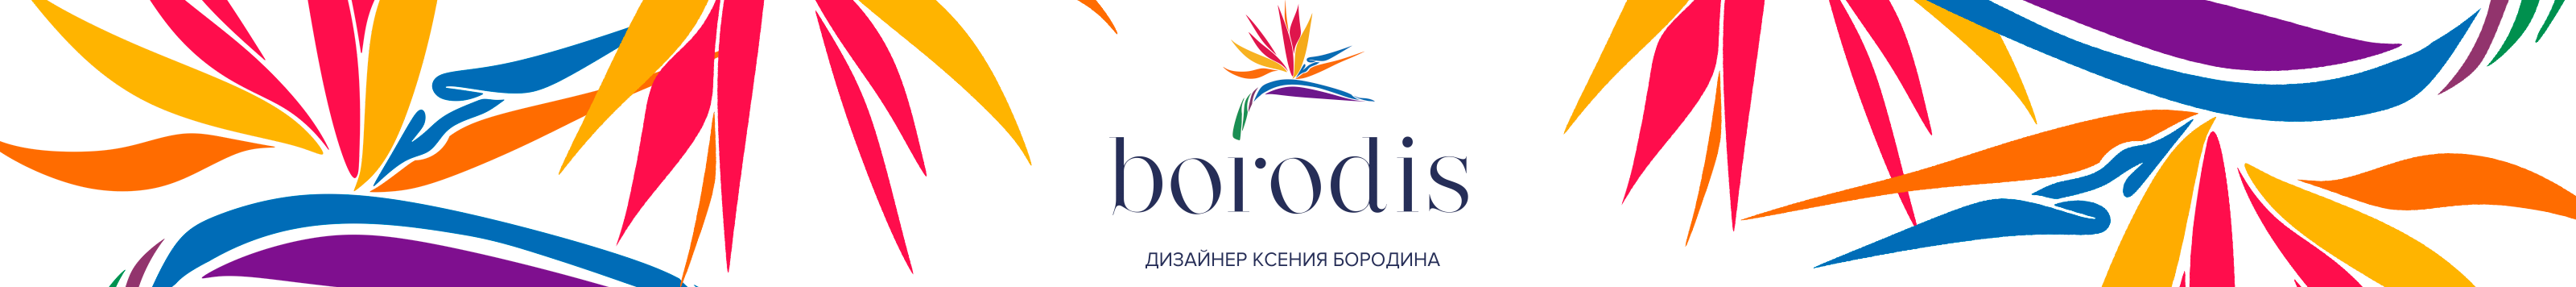 Ксения Бородина's profile banner